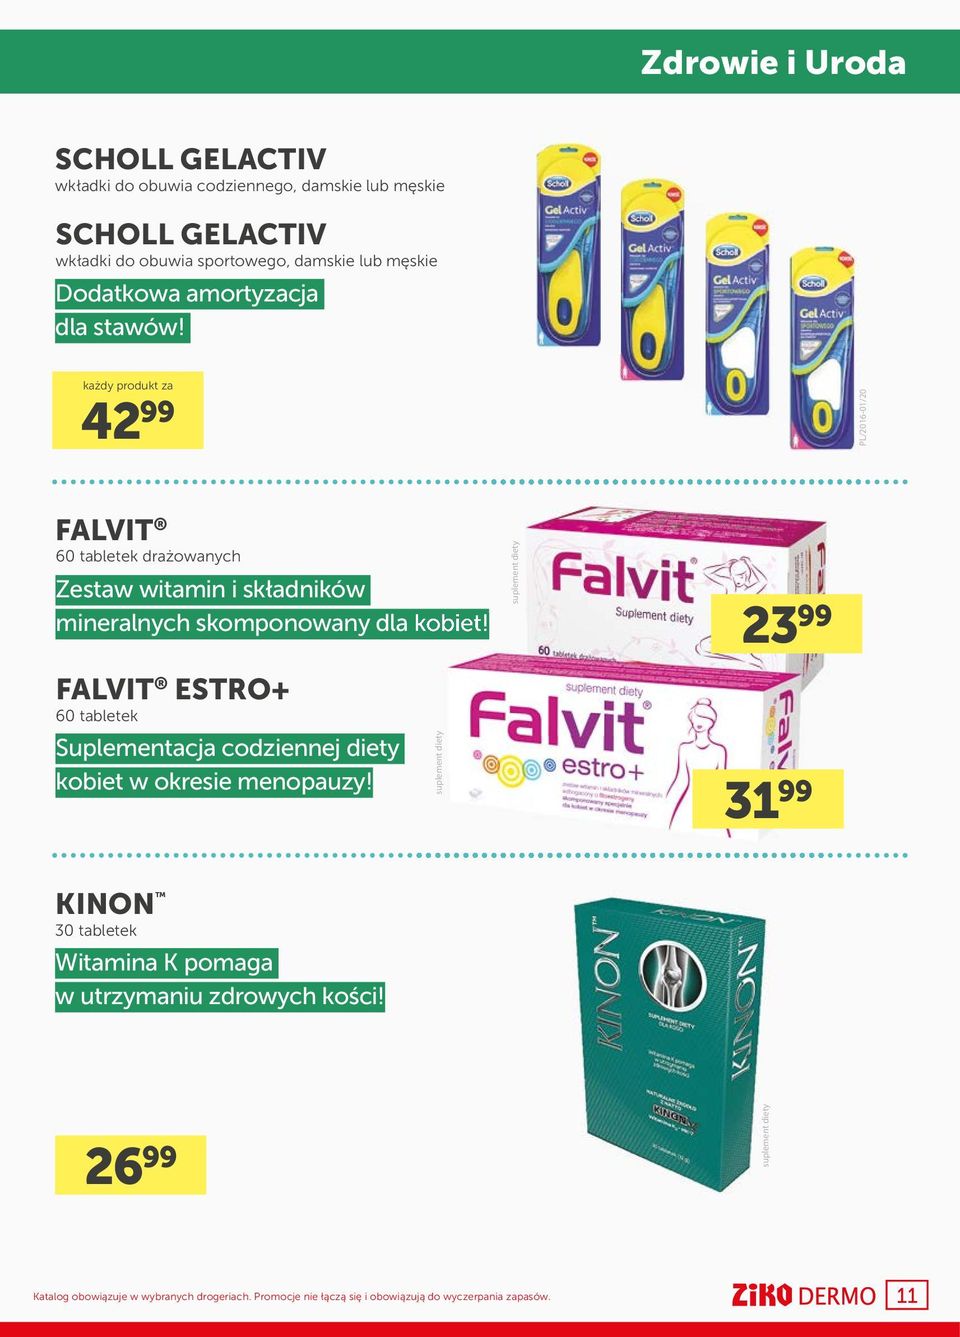 każdy produkt za 42 99 PL/2016-01/20 FALVIT 60 tabletek drażowanych Zestaw witamin i składników mineralnych skomponowany dla kobiet!